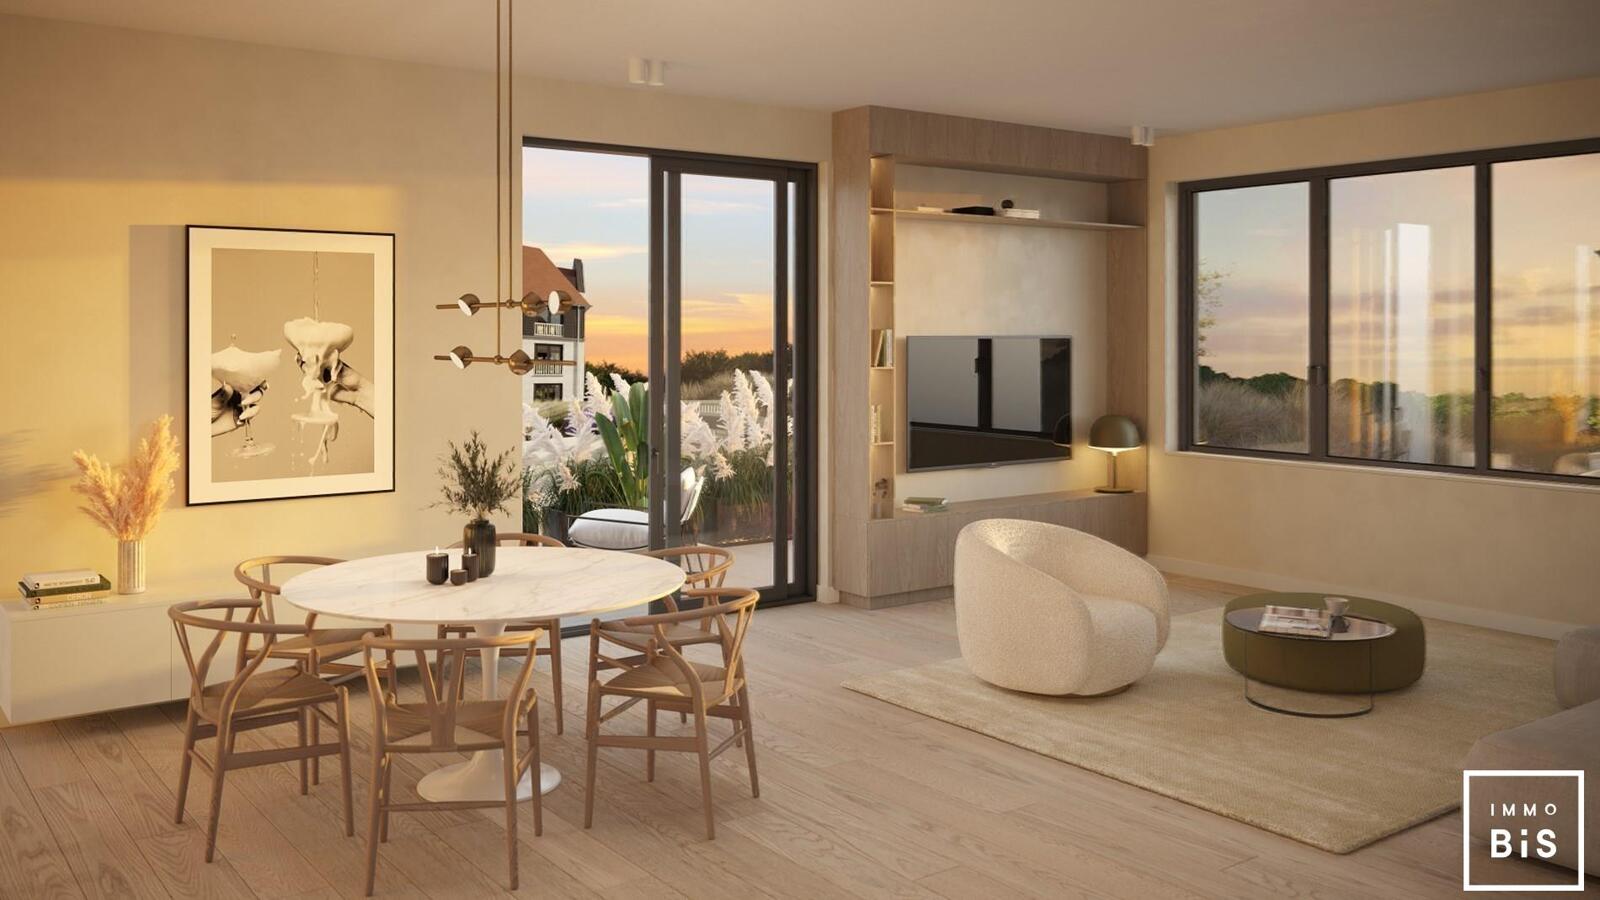 " Appartement villa moderne avec terrasse sur la Digue à Cadzand - Résidence Duinhof-Noord " 2